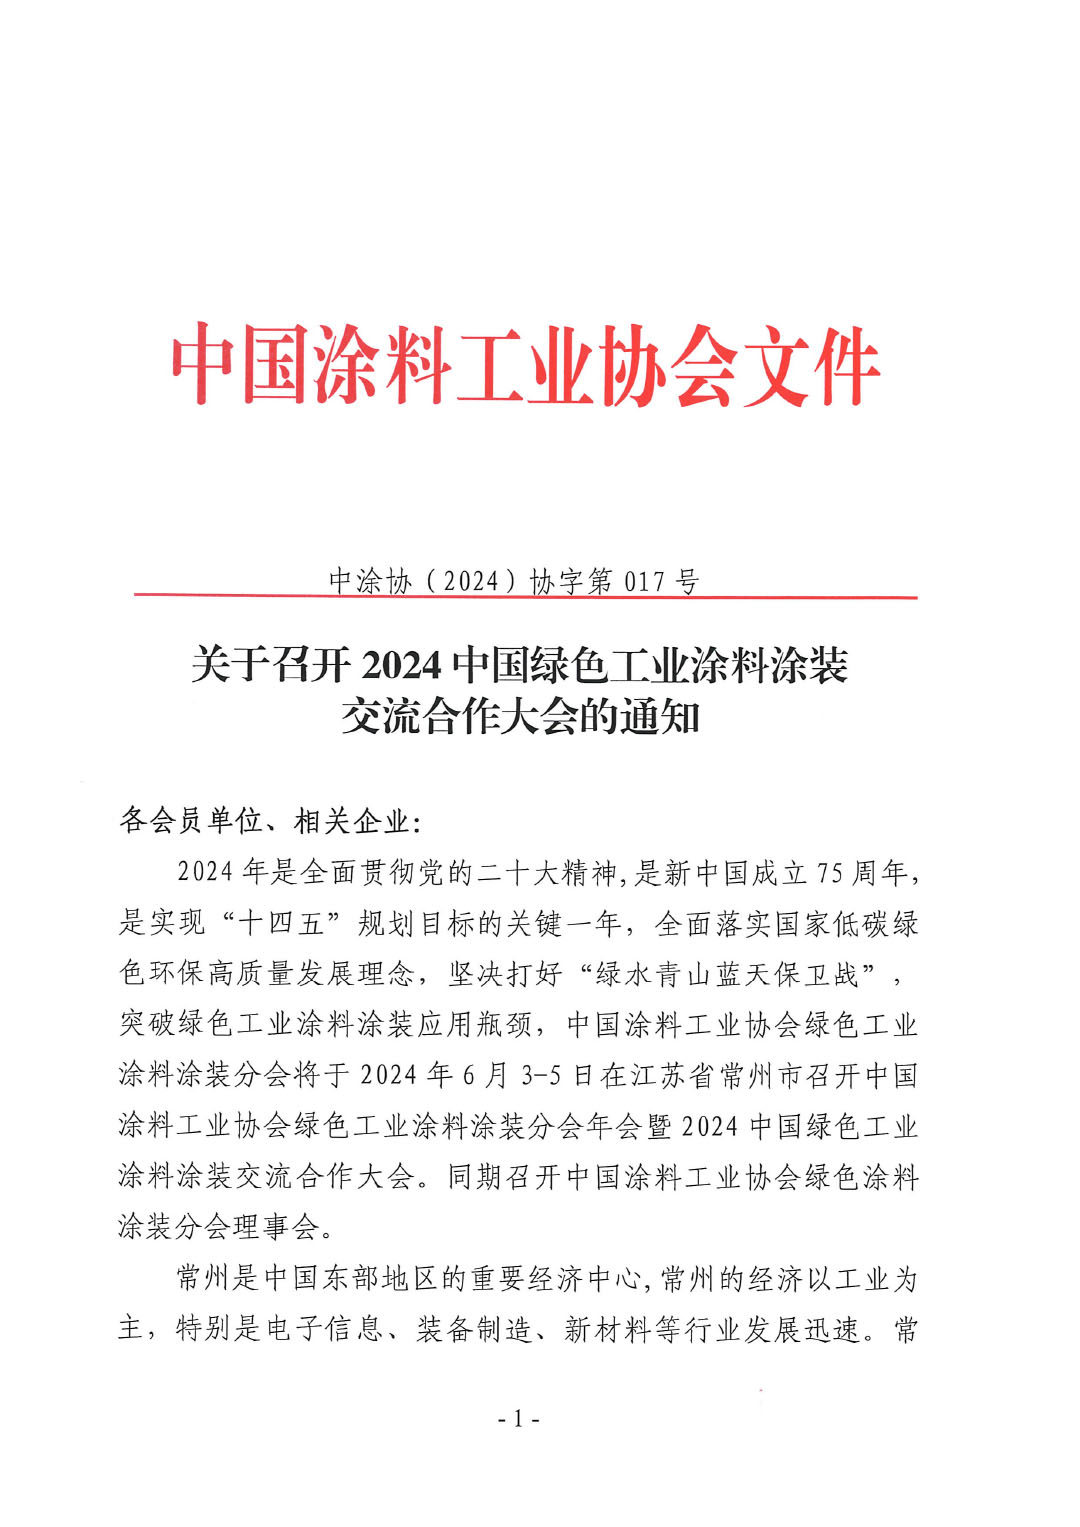 关于召开2024中国绿色工业涂料涂装交流合作大会的通知-1